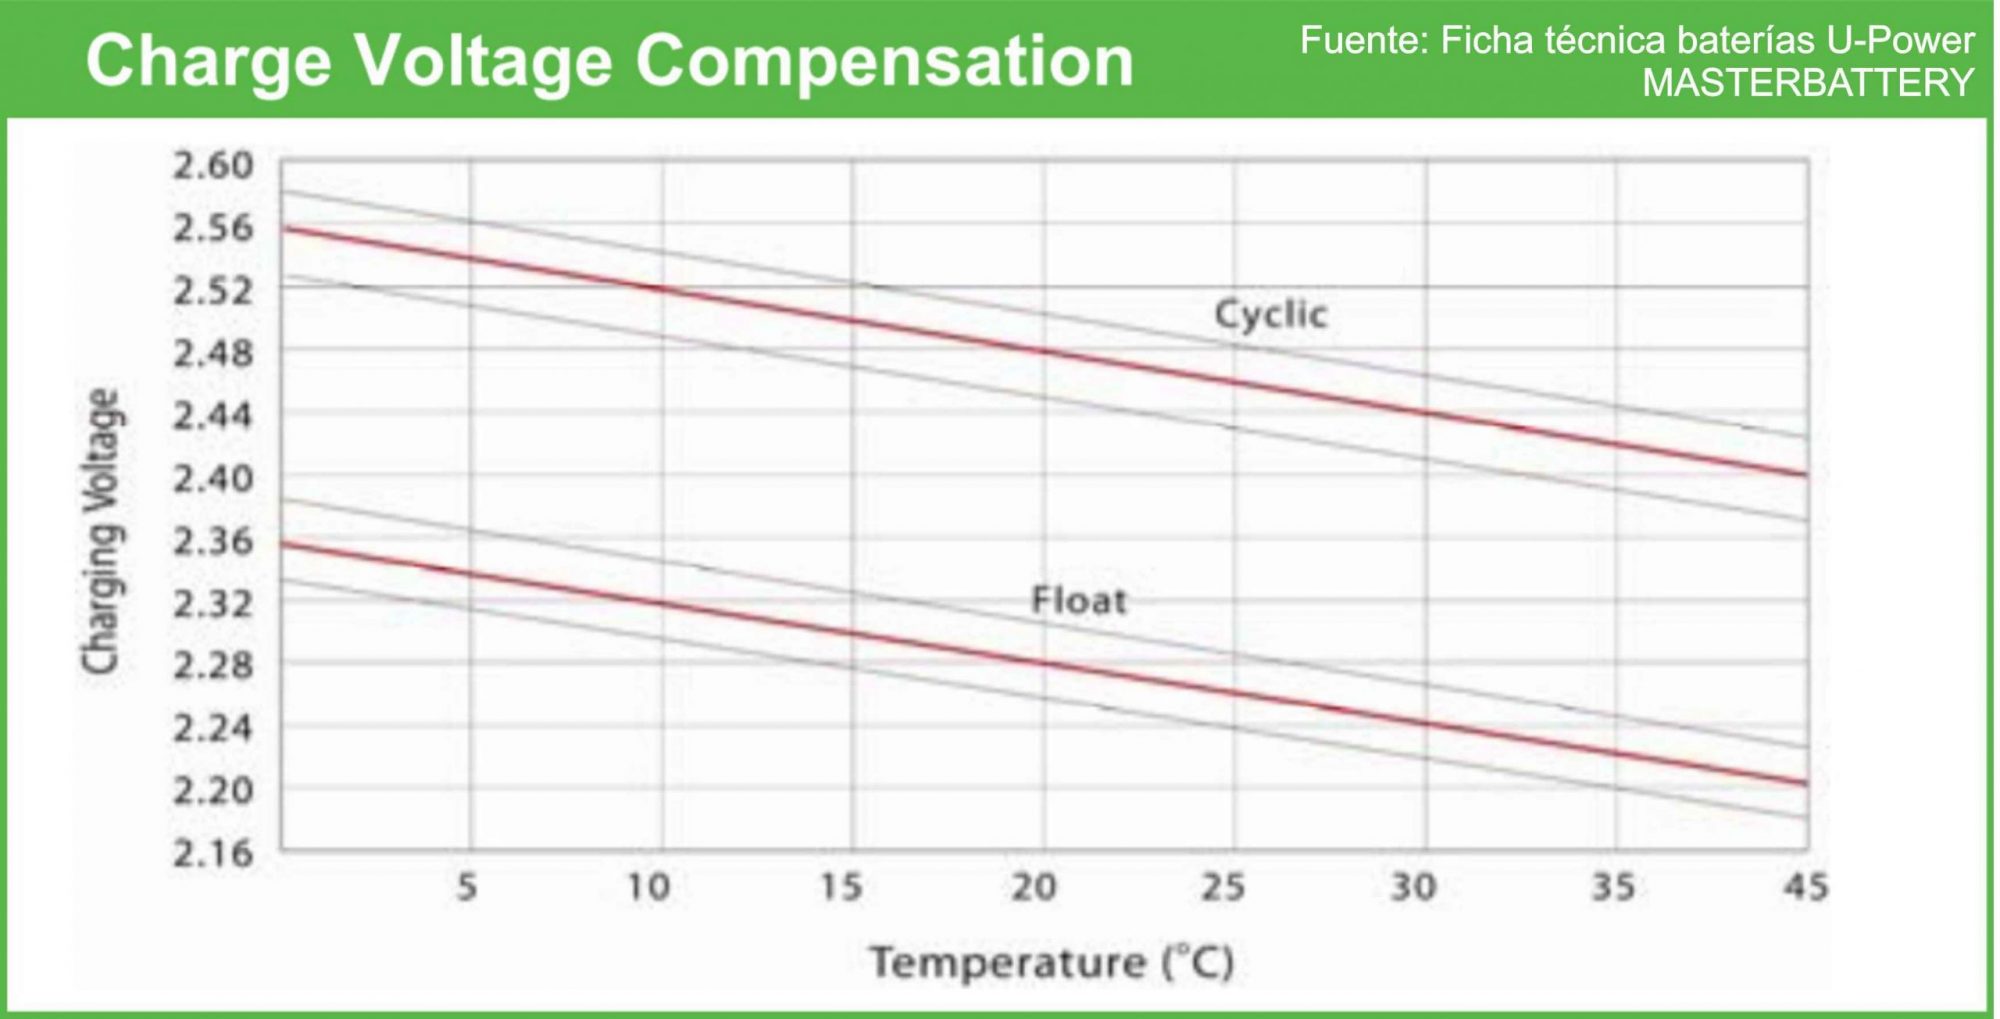 Compensación voltaje de carga según temperatura